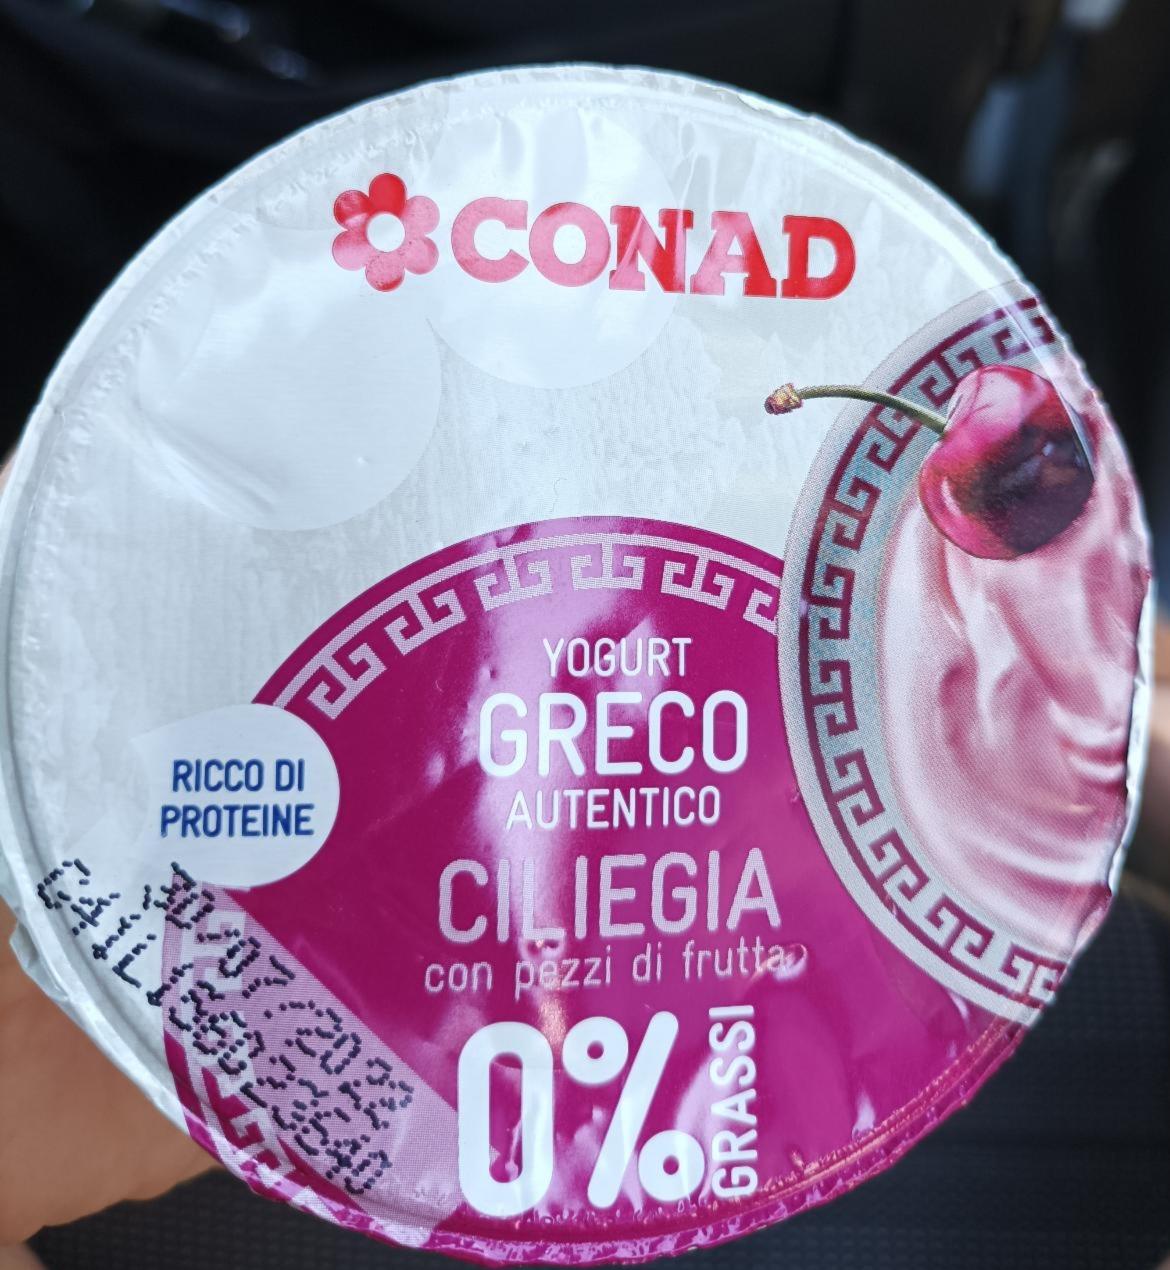 Fotografie - Yogurt Greco Autentico Ciliegia 0% grassi Conad